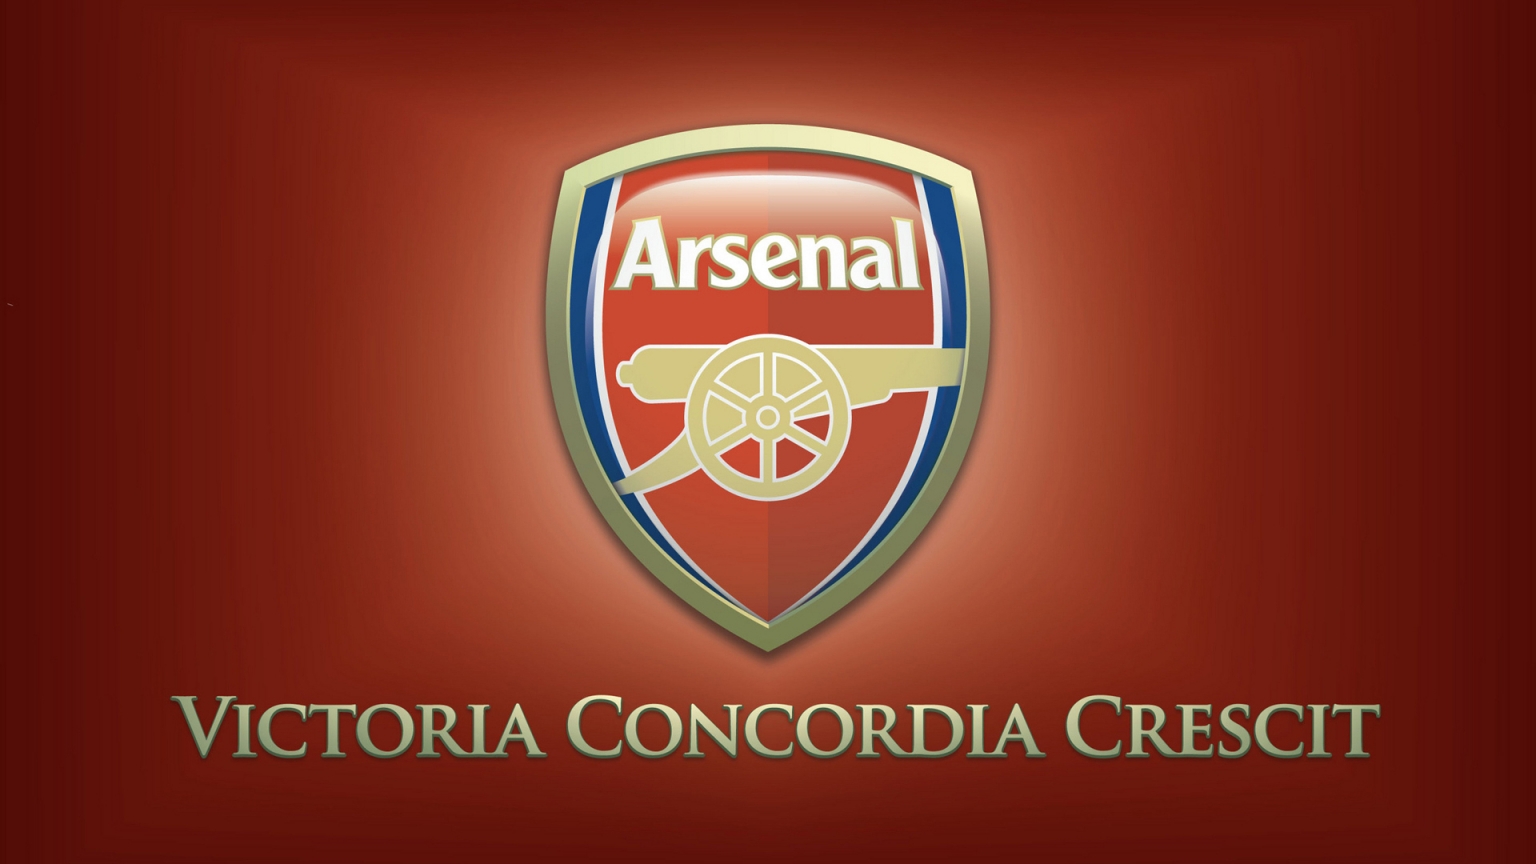 Arsenal Logo for 1536 x 864 HDTV resolution